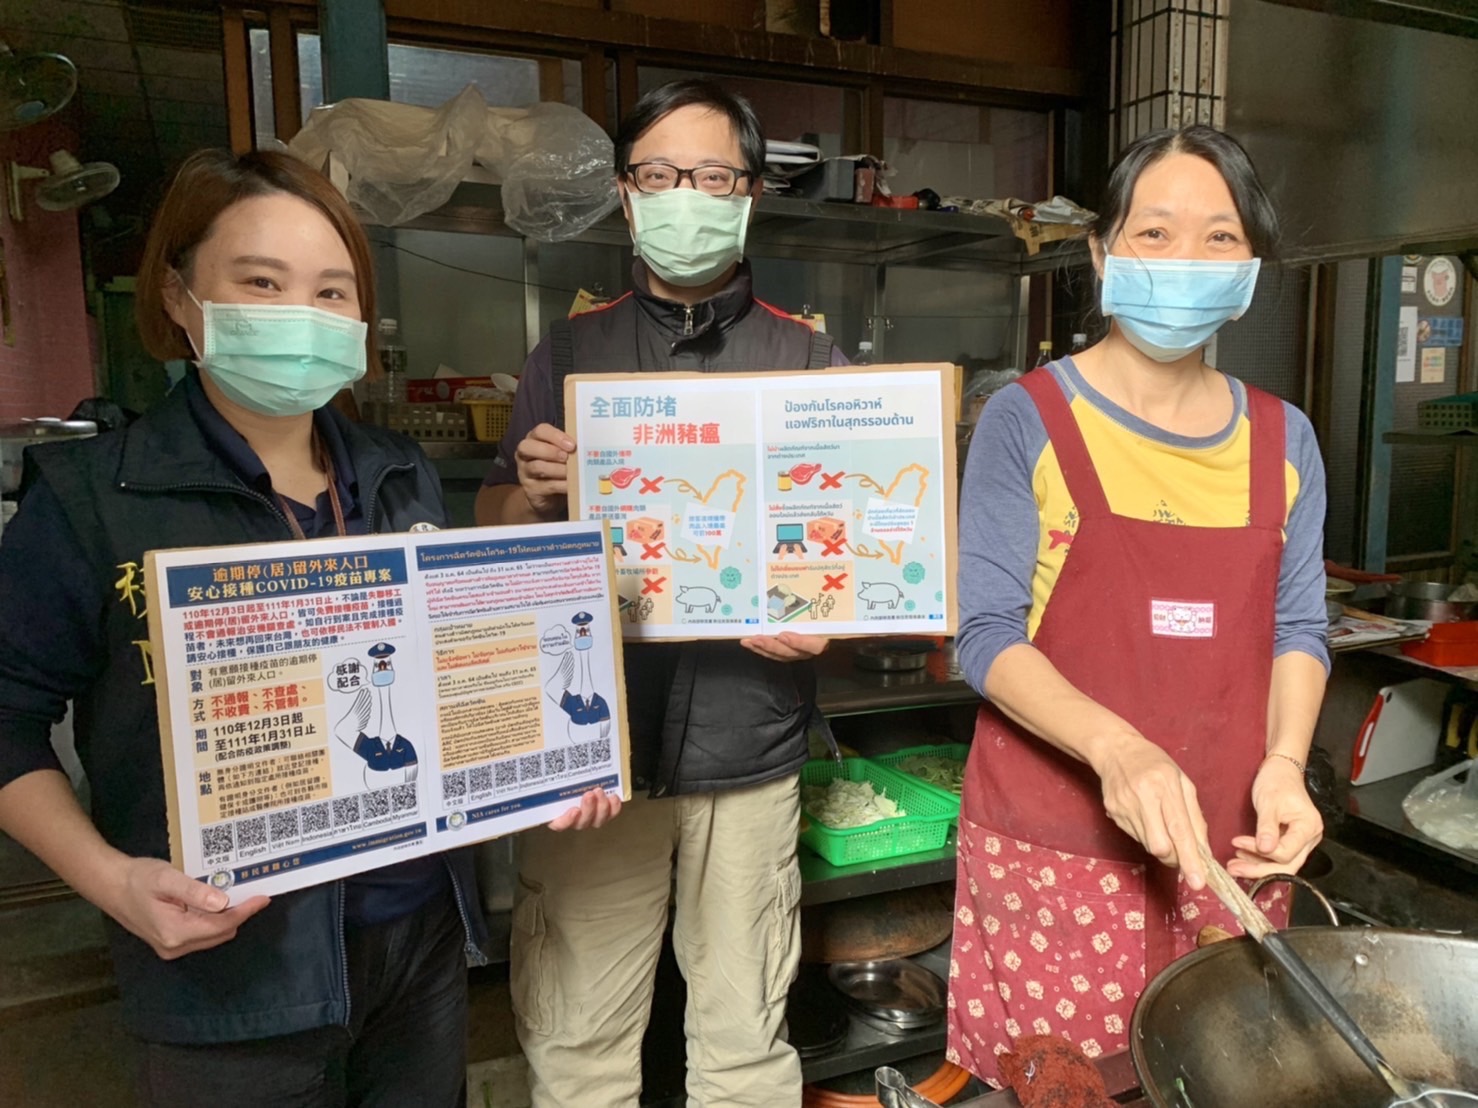 Đội Đặc nhiệm đã đến thăm các hộ kinh doanh để tiến hành tuyên truyền, chủ nhà hàng hết sức khen ngợi công tác phòng chống dịch COVID-19 của Đài Loan, nhờ đó mà có thể yên tâm kinh doanh. (Nguồn ảnh: Đội Đặc nhiệm thành phố Cao Hùng)